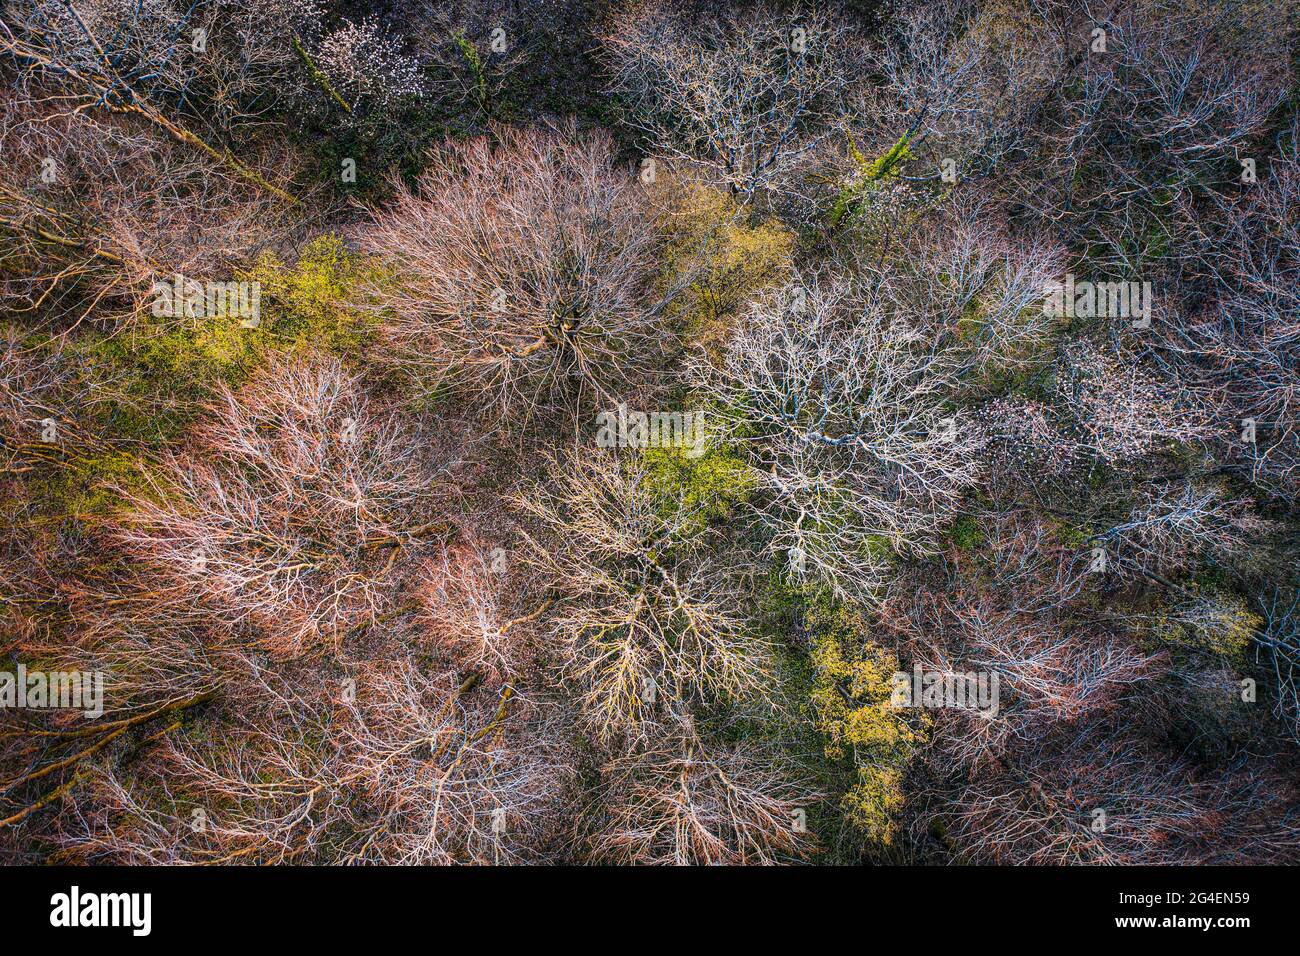 Vista superior del bosque de árboles caducifolios a principios de primavera, Ardenas, Bélgica Foto de stock